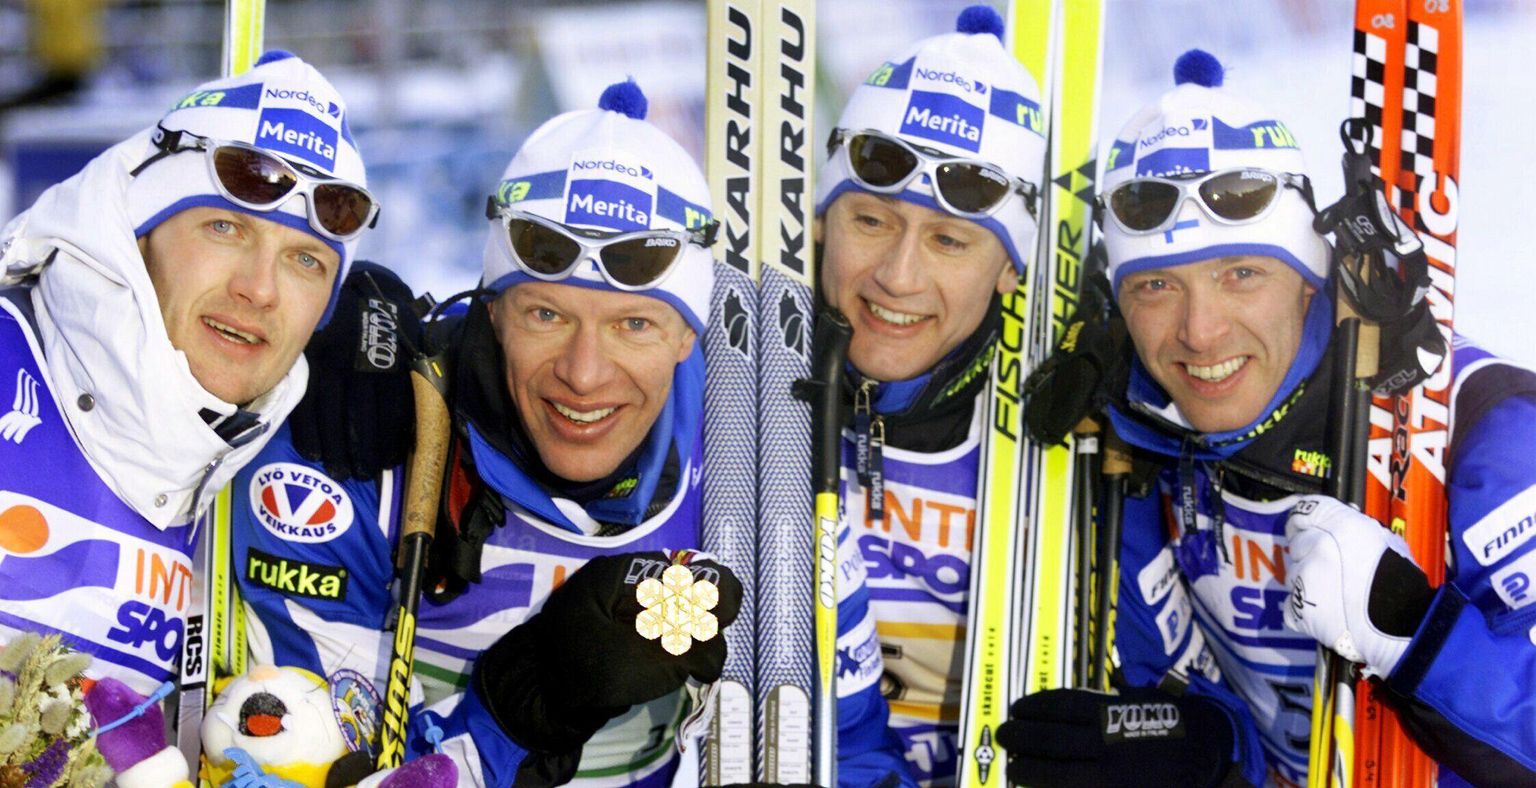 Soome 4x10 km teatenelik, kelle kuldsed medalid pärast dopinguskandaali puhkemist tühistati. Vasakult alates Janne Immonen, Harri Kirvesniemi, Sami Repo ja Mika Myllylä.